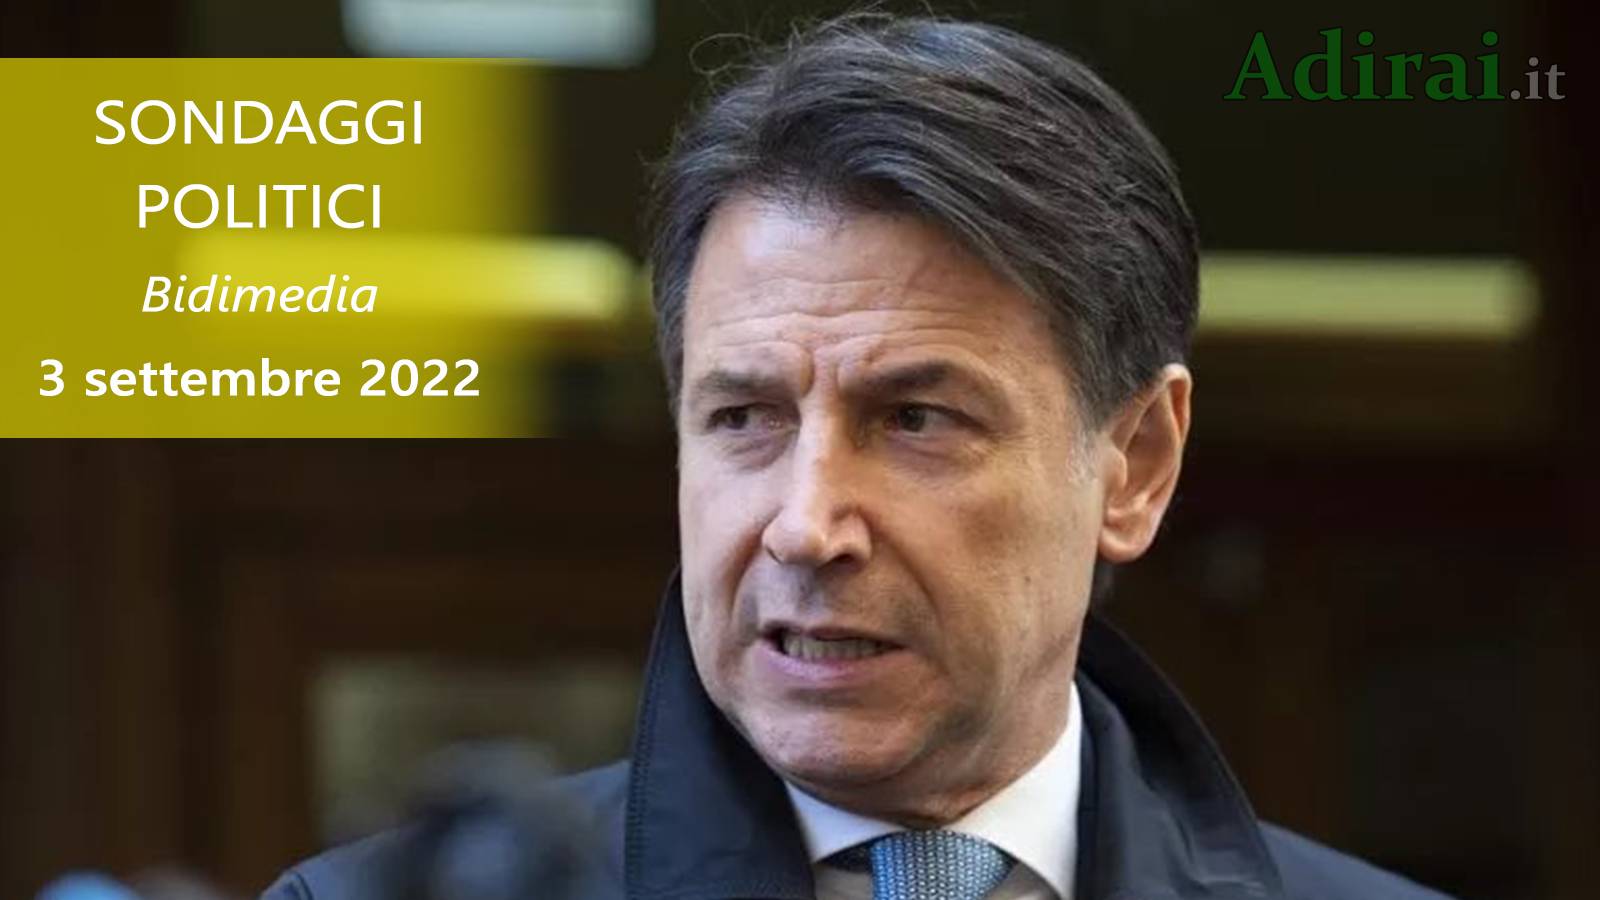 ultimi sondaggi politici 3 settembre 2022 bidimedia di tutti i partiti italiani